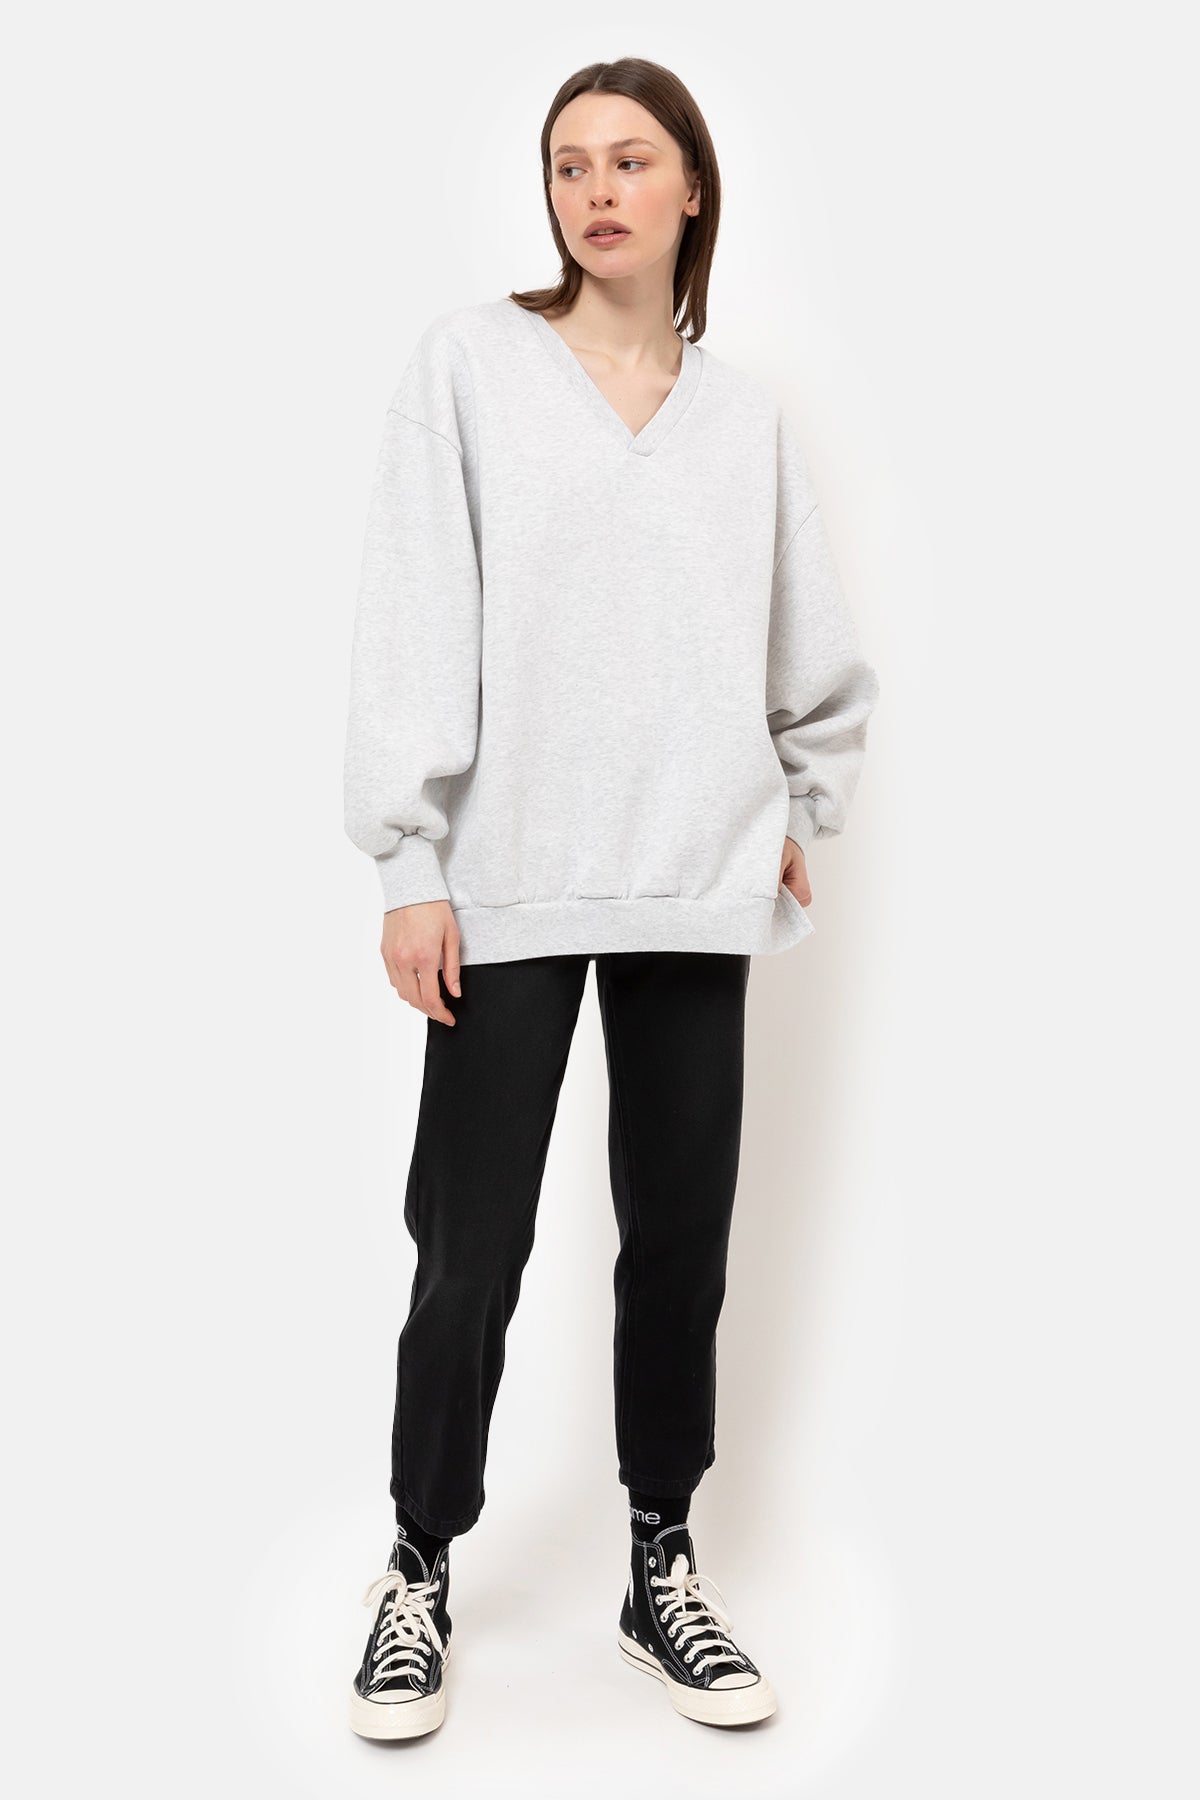 Intime Oversized Sweatshirt with V-neck | Marled Grey